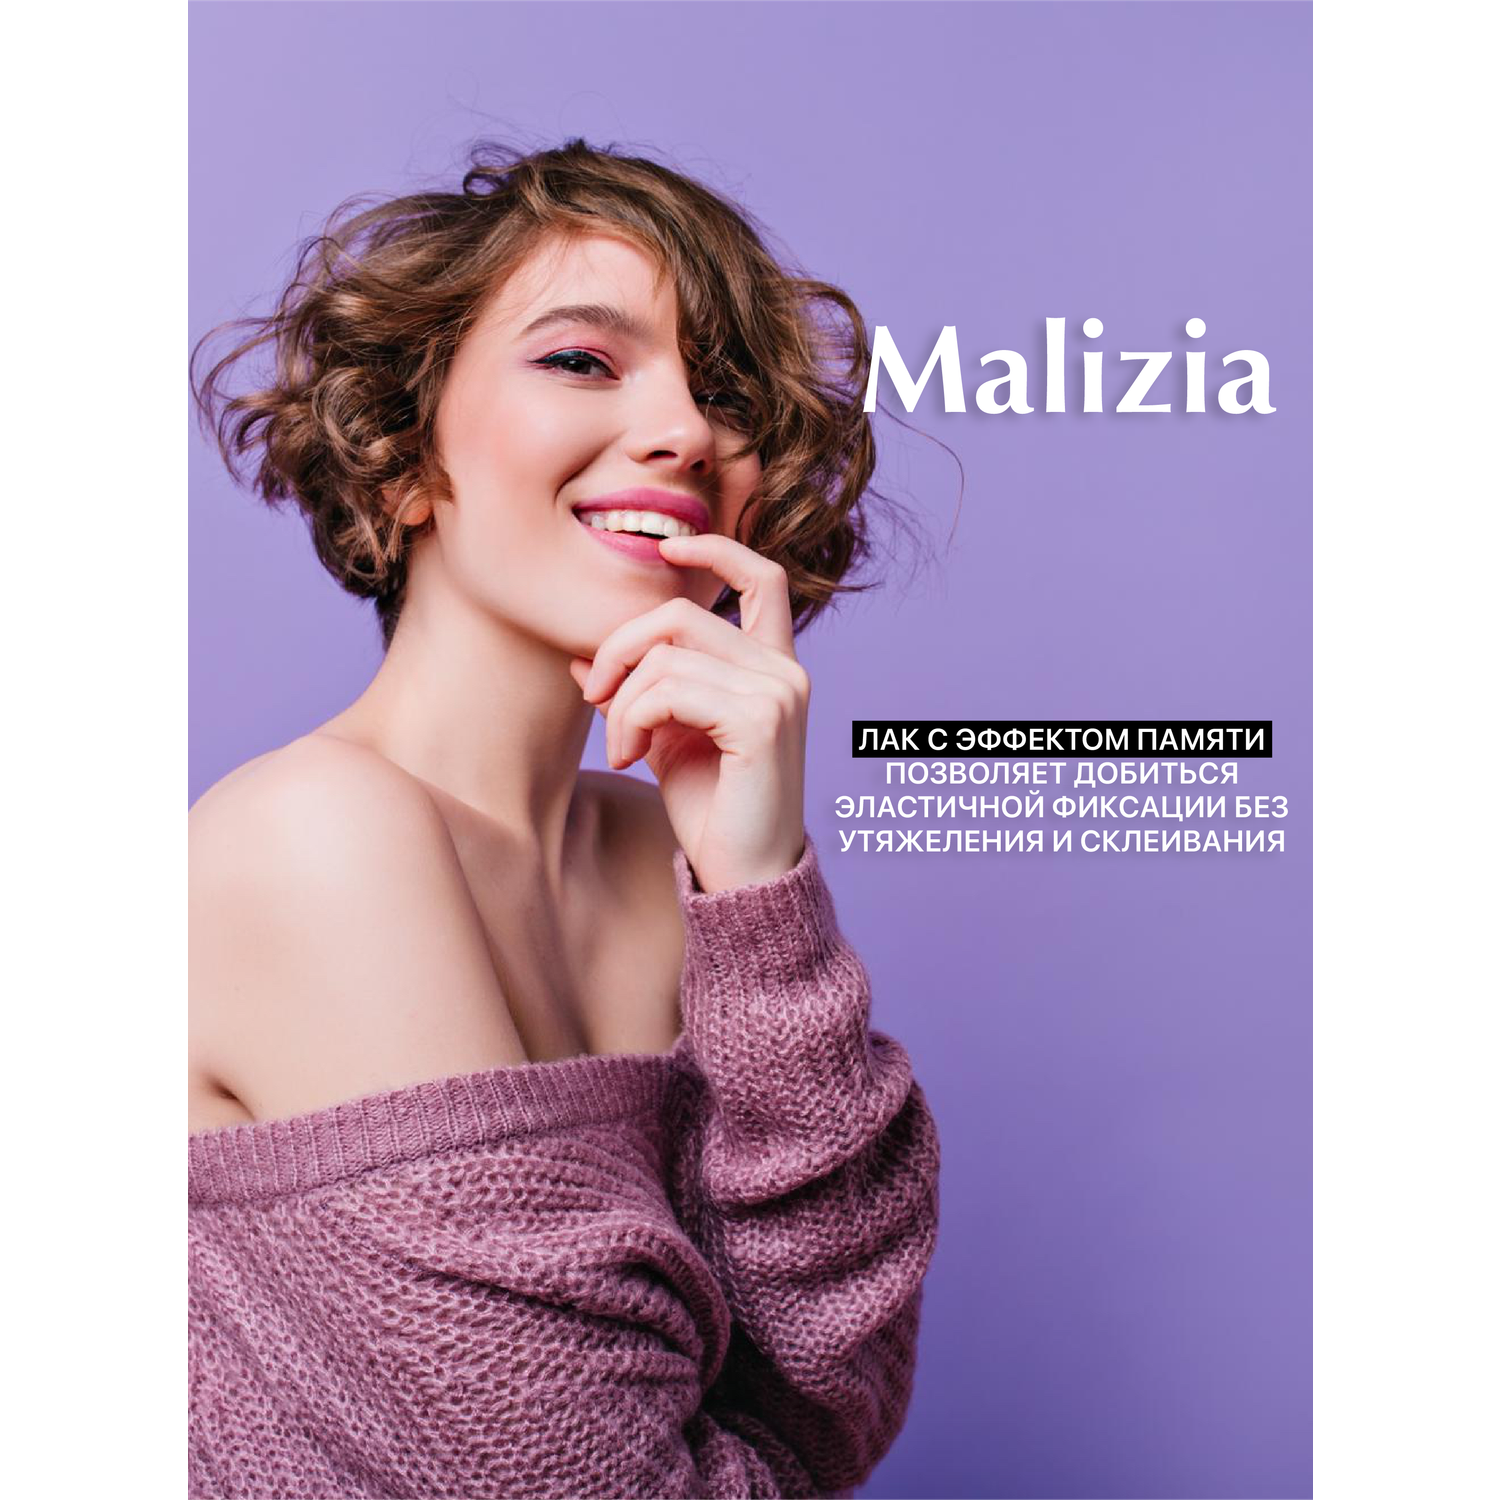 Лак для волос Malizia сильной фиксации с провитамином В5 250 мл - фото 4